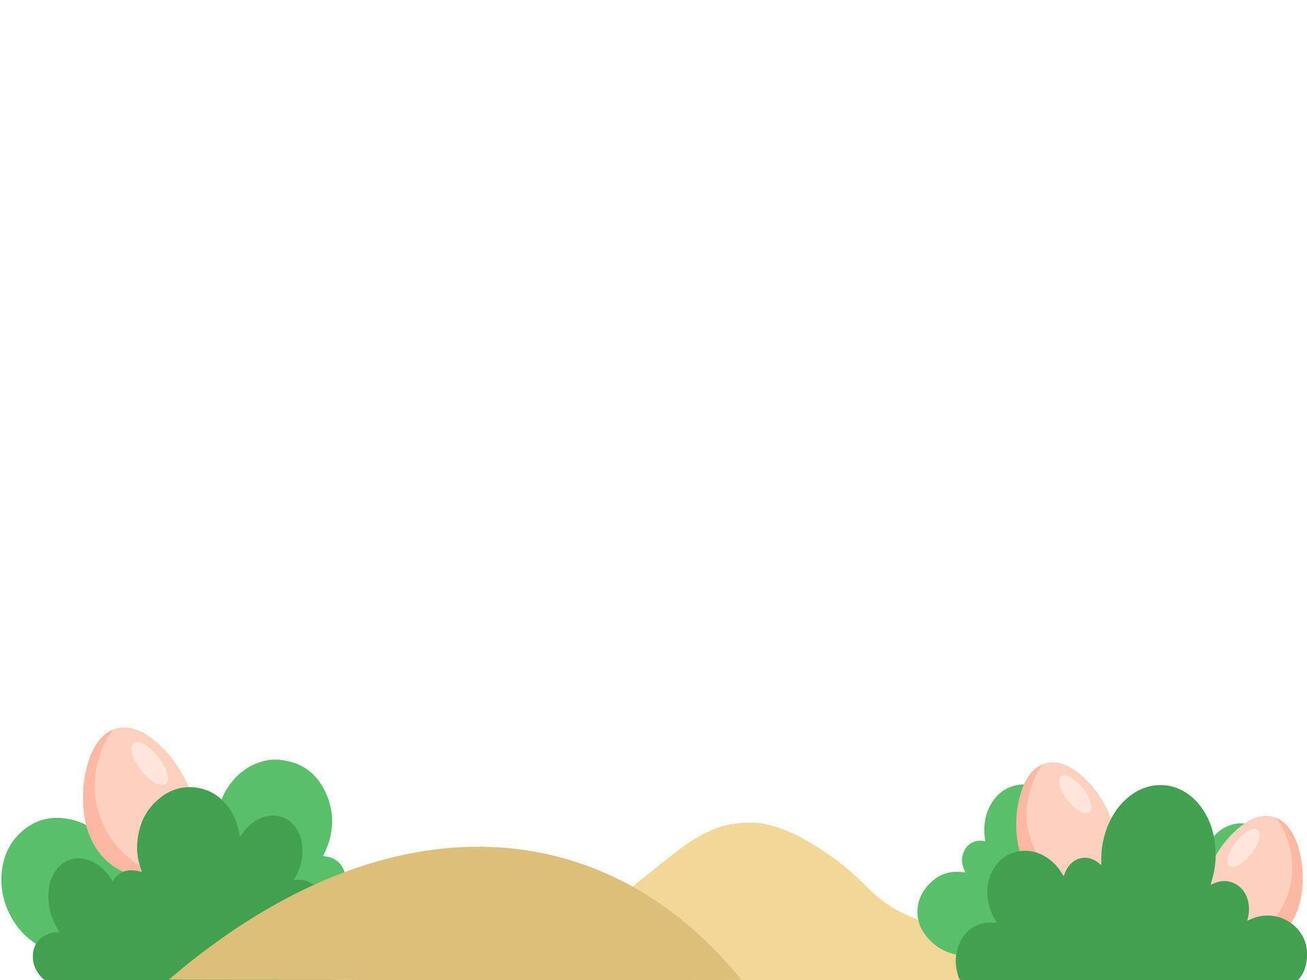 Easter Eggs Green Grass Illustration vector